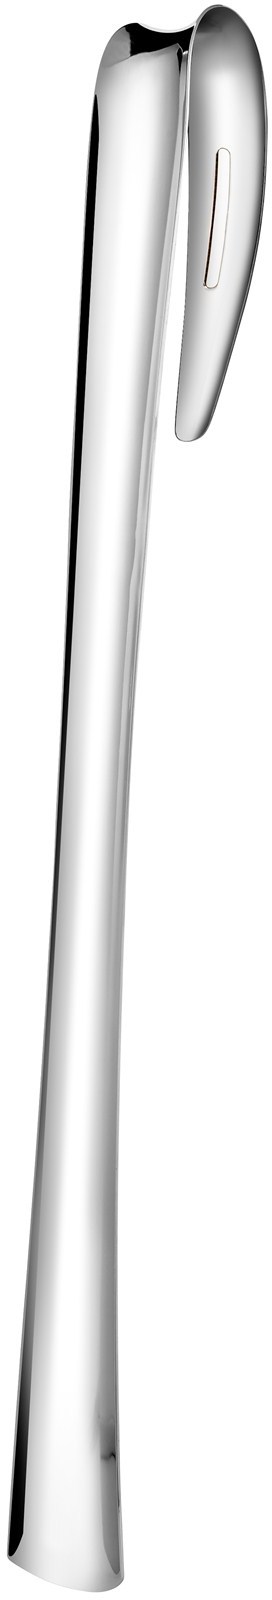 Tog cylinder Samarbejde Nuance Skohorn m.holder 55x5 cm blank - Øvrigt Boliginteriør - Hjem.dk